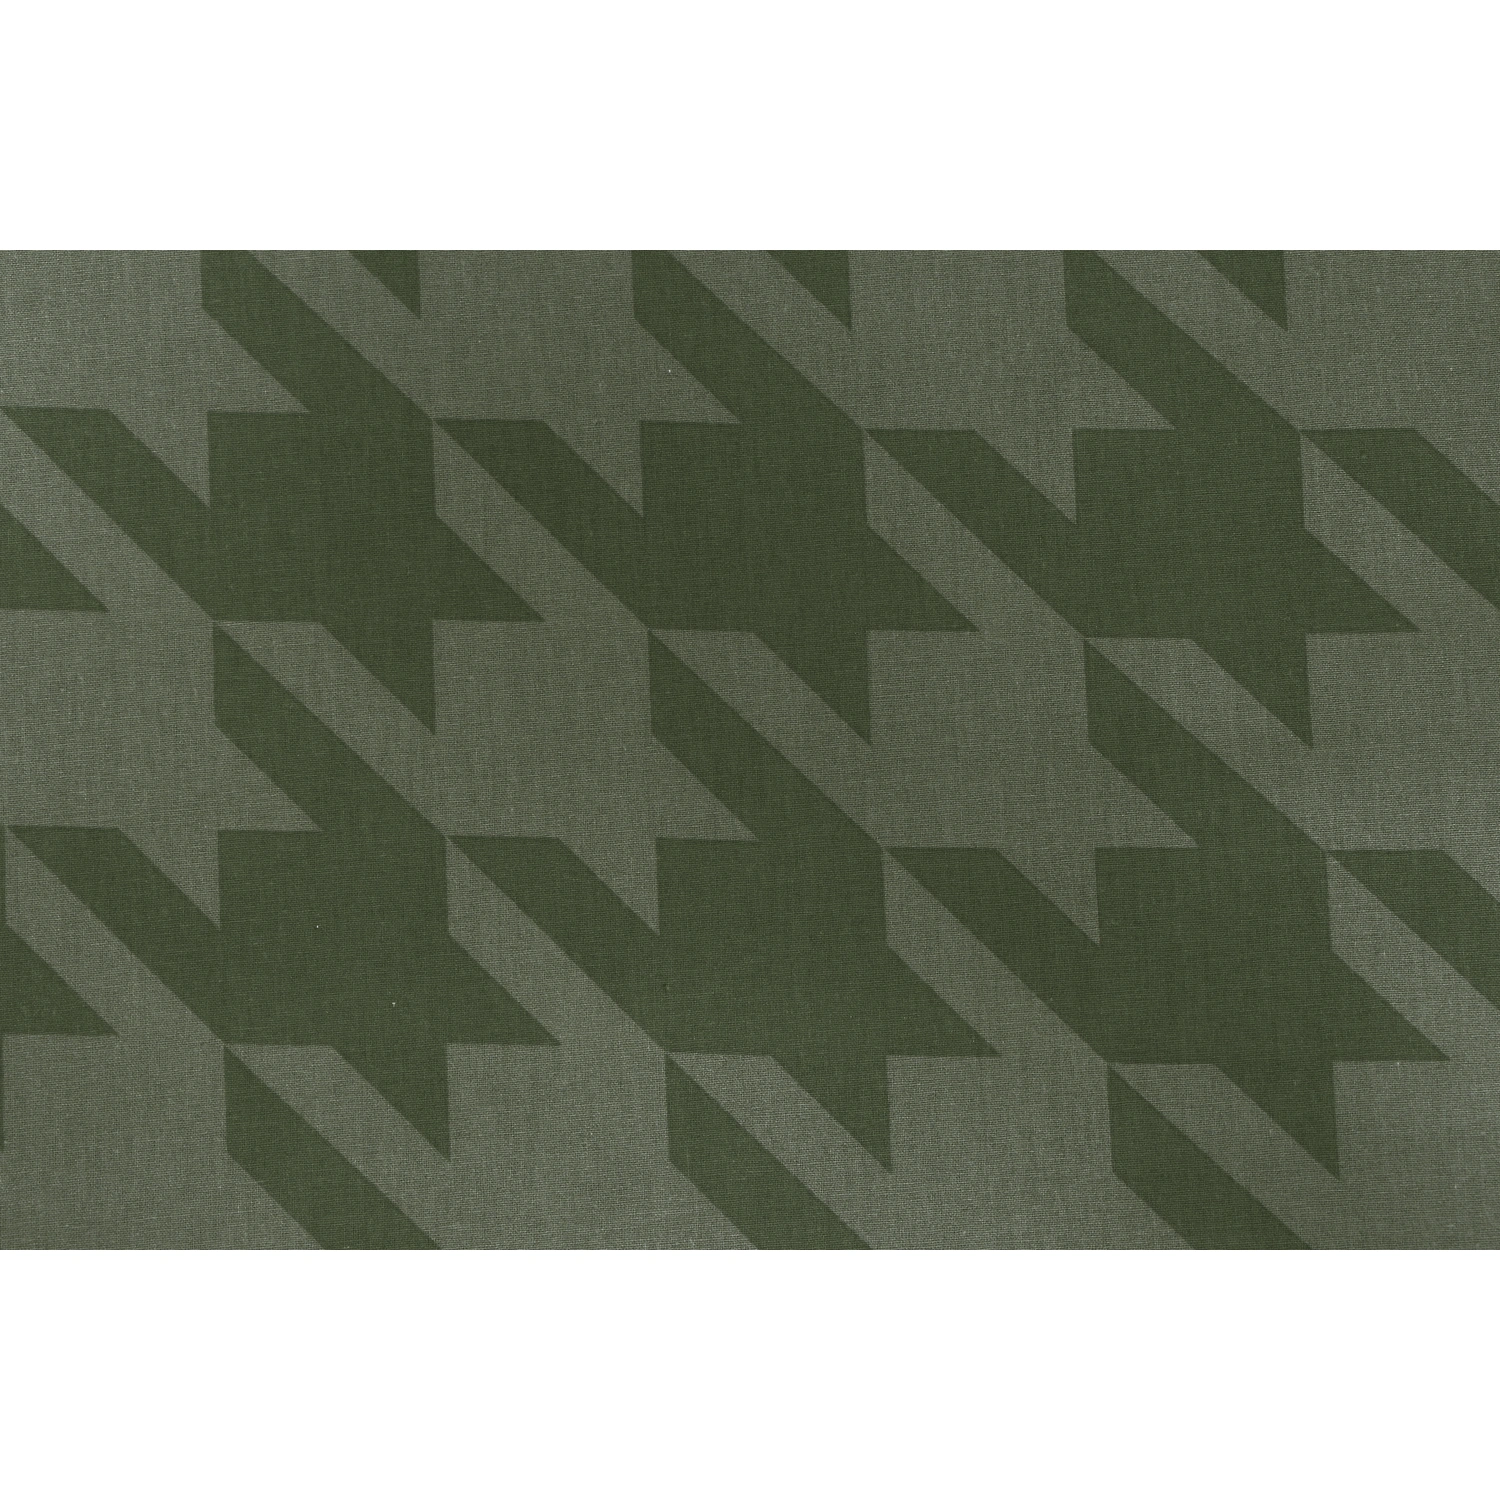 SIENA GARDEN Sitzauflage »Xora«, grün, Mosaik, BxL: 48 x 120 cm